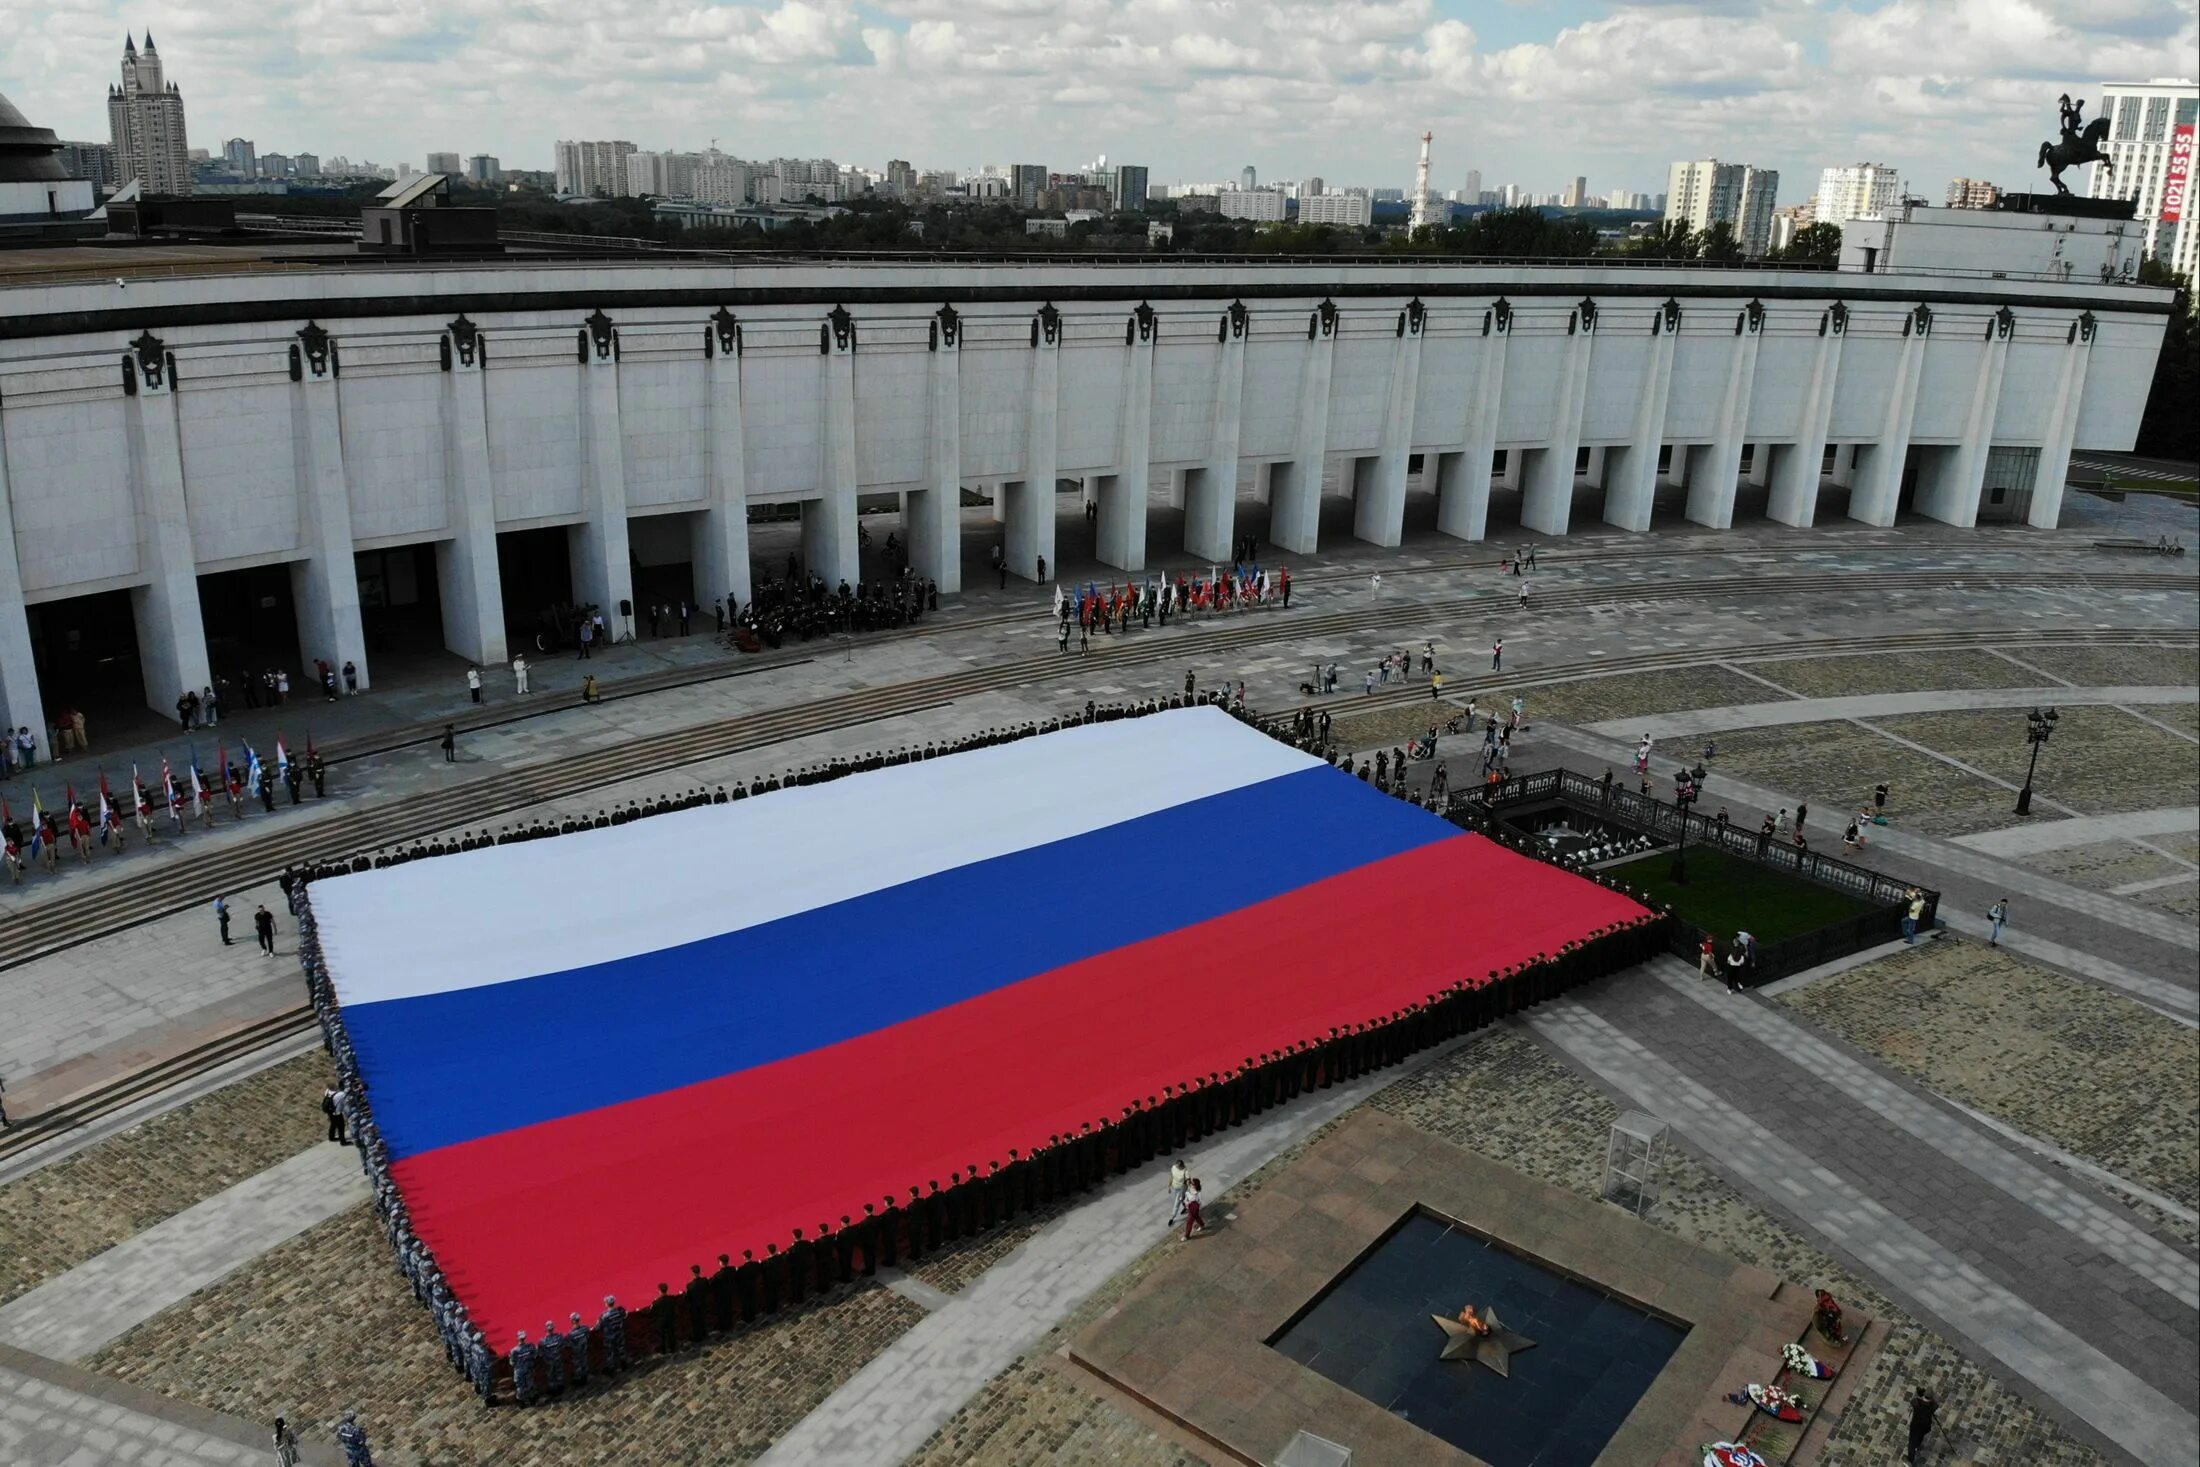 Фото государственного флага. Большой флаг России. Самый юольшой флаг Росси. Огромный флаг России. Огромный флагшток России.